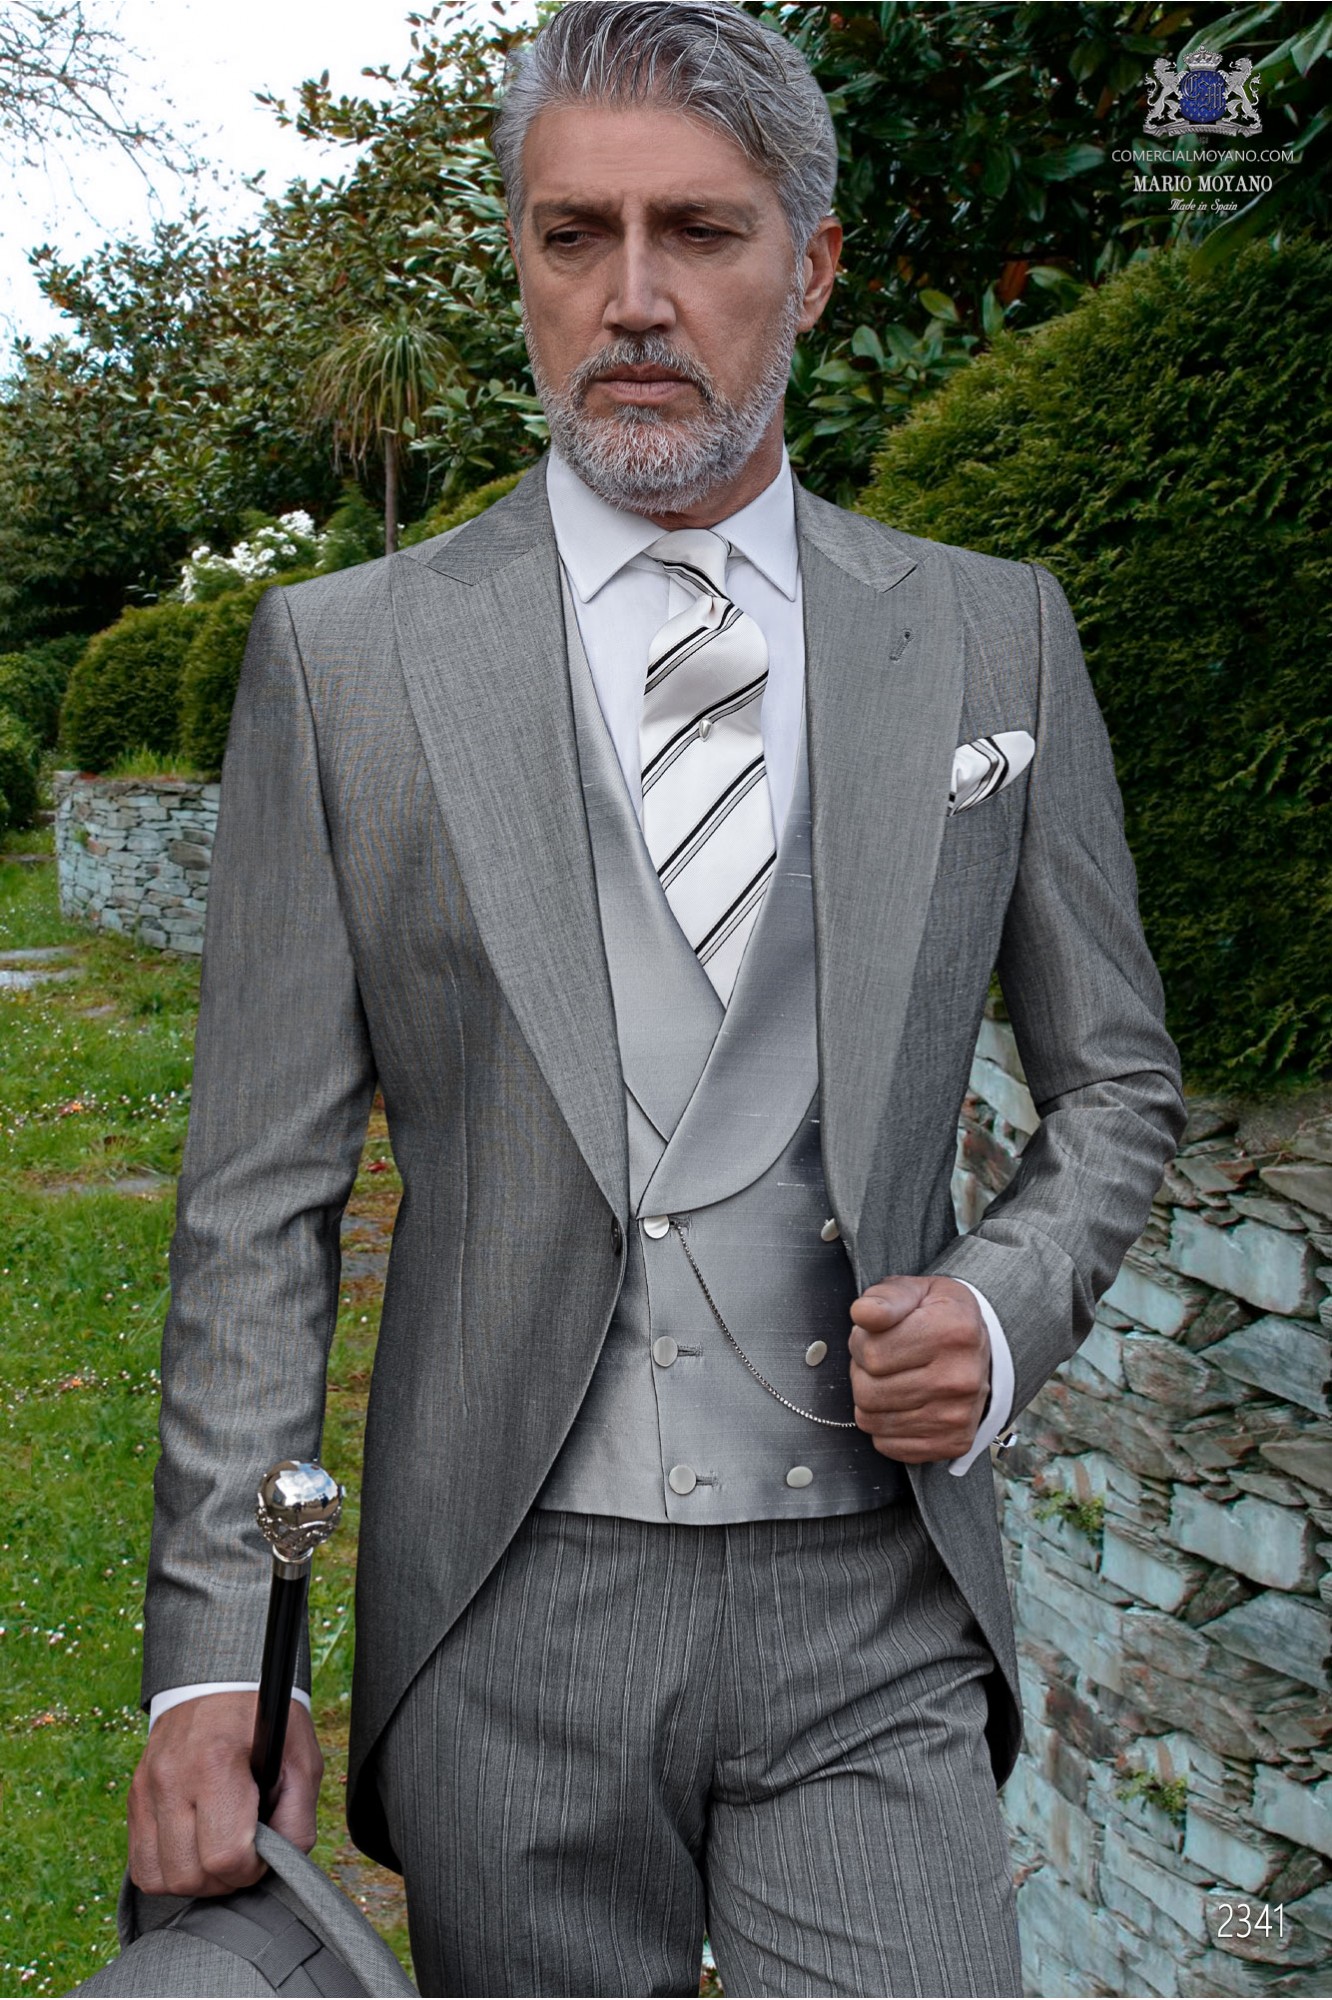 Chaqué de novio gris claro tejido lana alpaca con pantalón raya diplomática